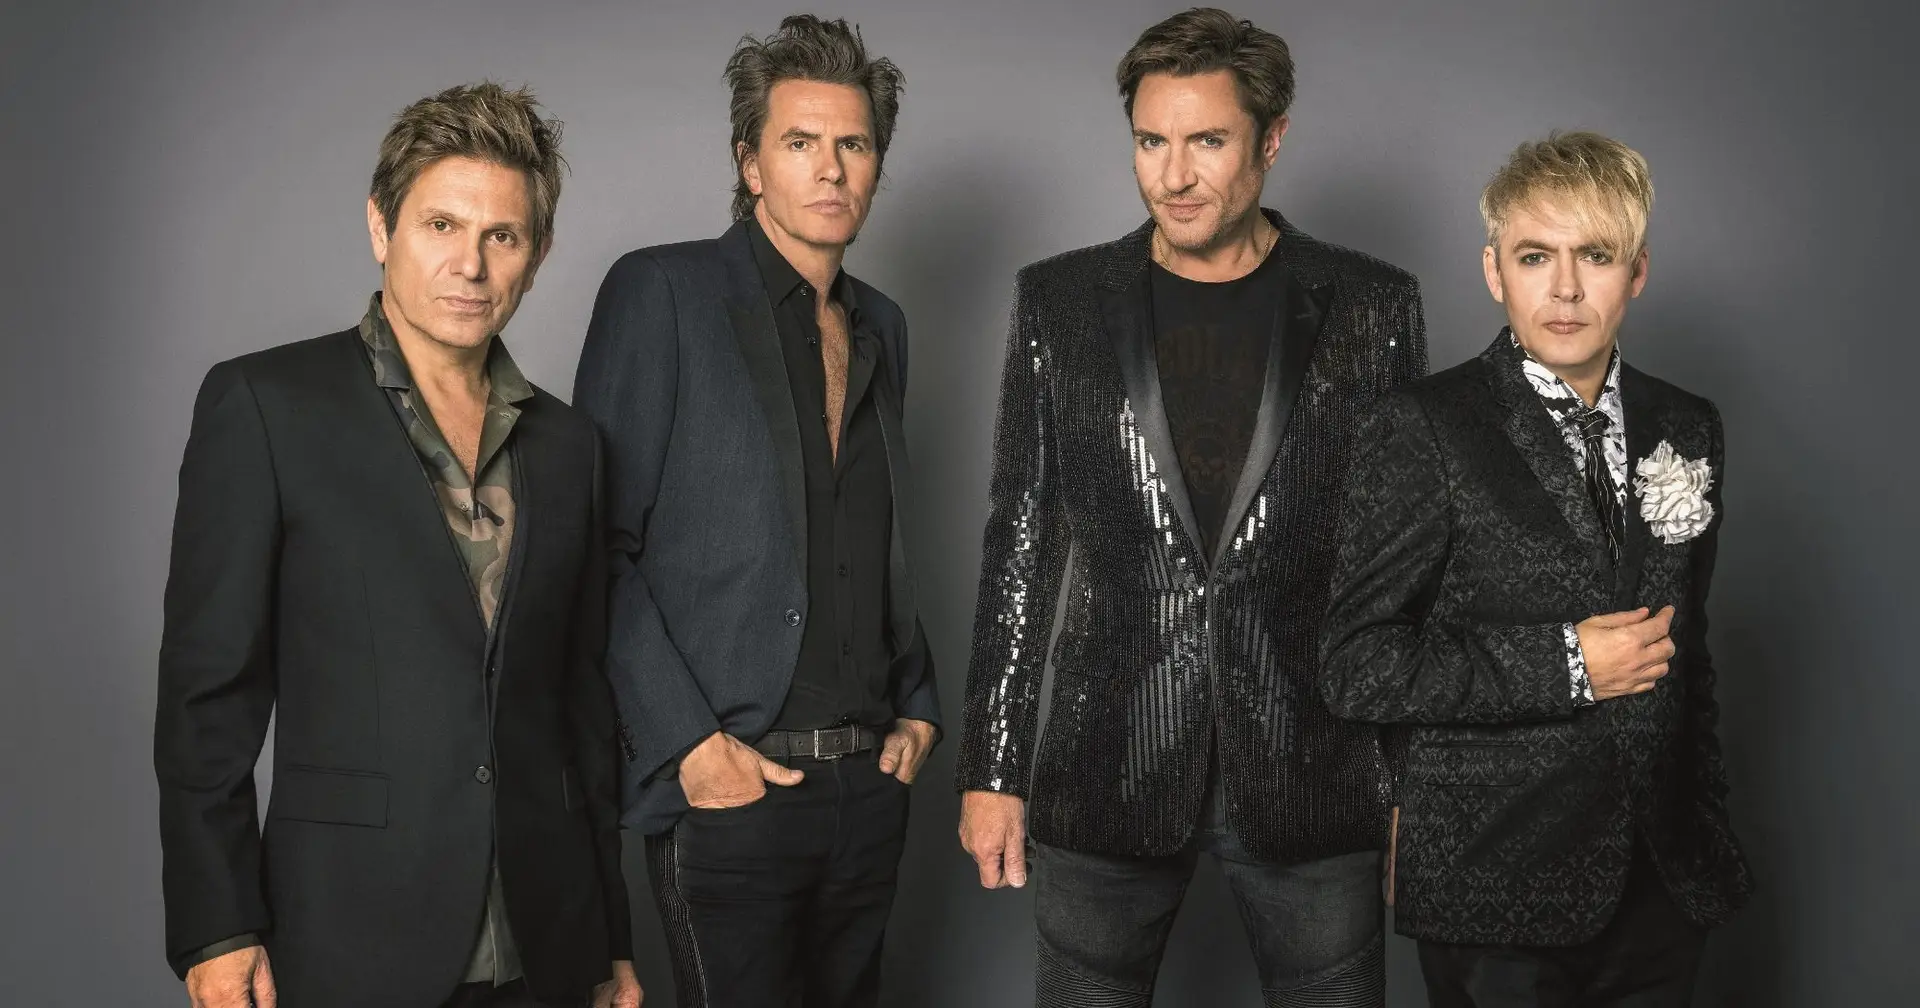 Duran Duran em entrevista: “Muitas bandas dos anos 80 eram bem melhores do que nós naquele tempo, mas nós conseguimos ir sempre evoluindo”